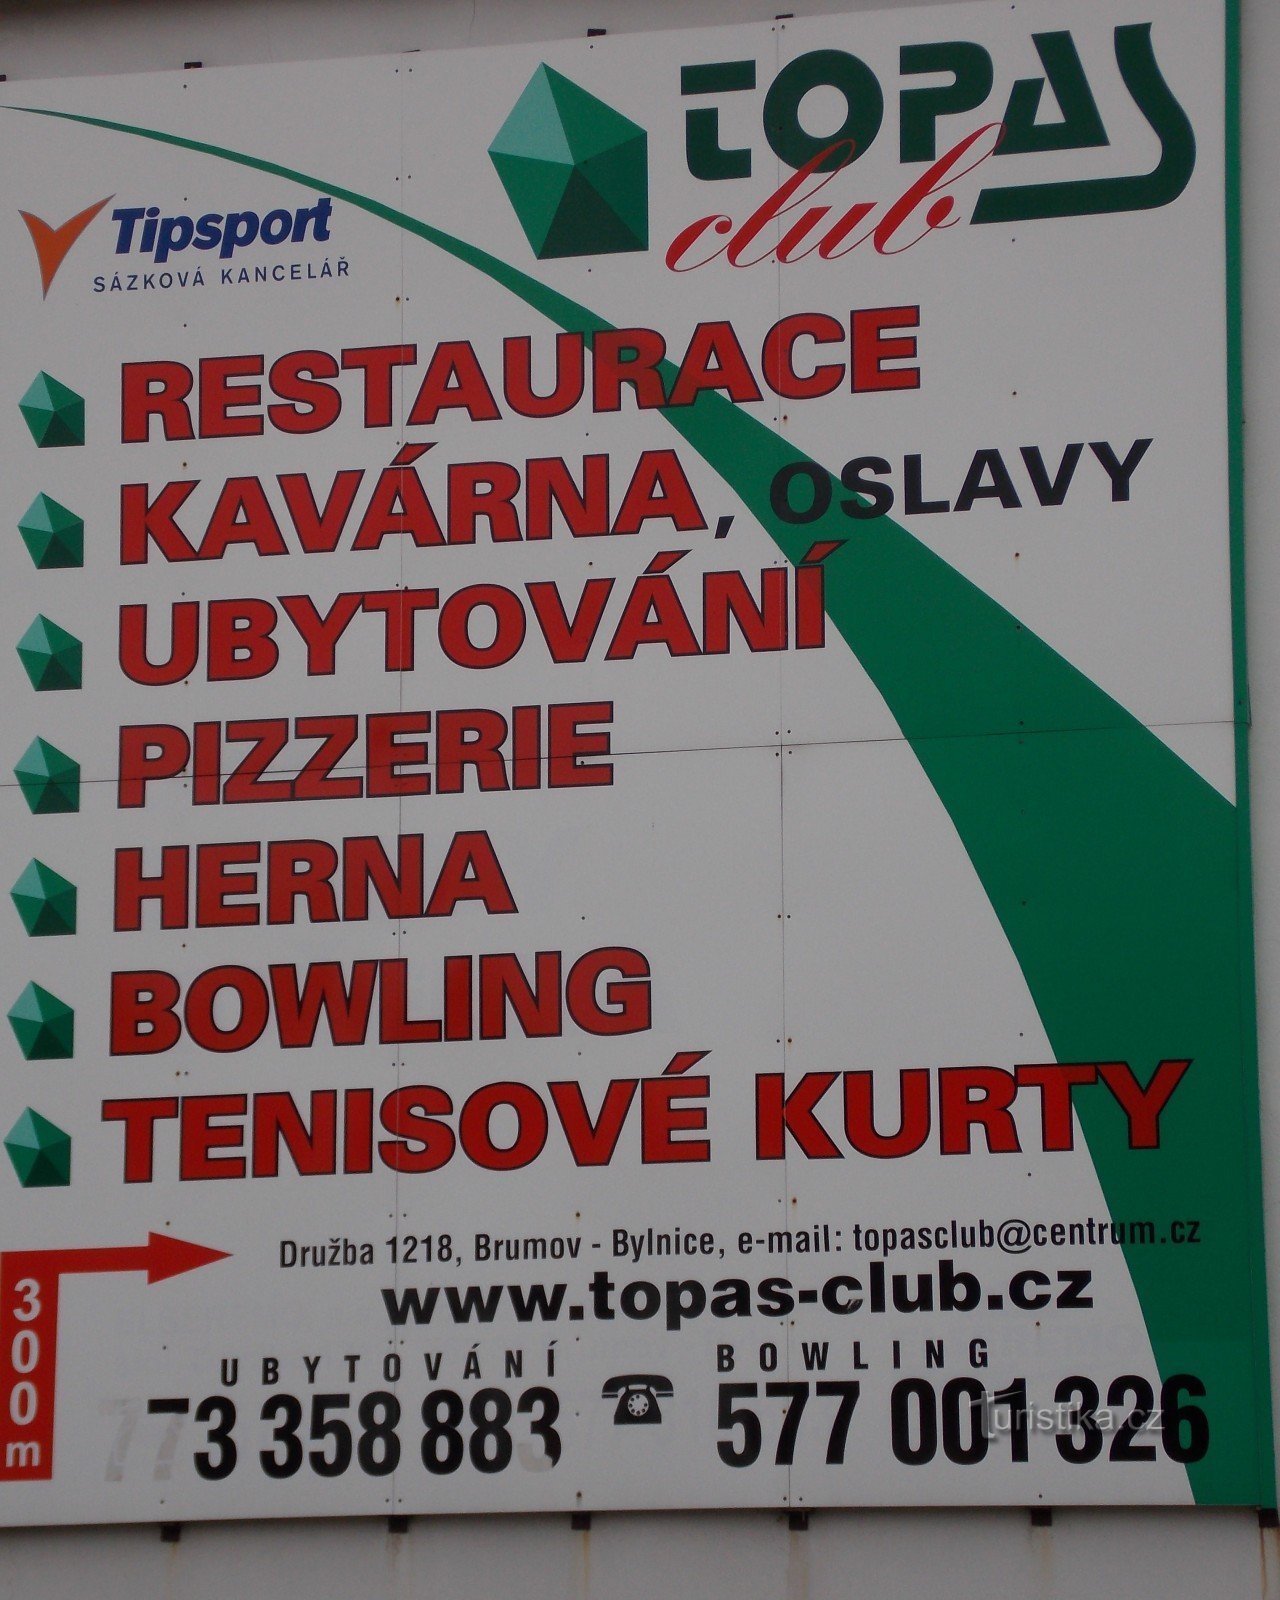 Topas Club in Brumov - Bylnice